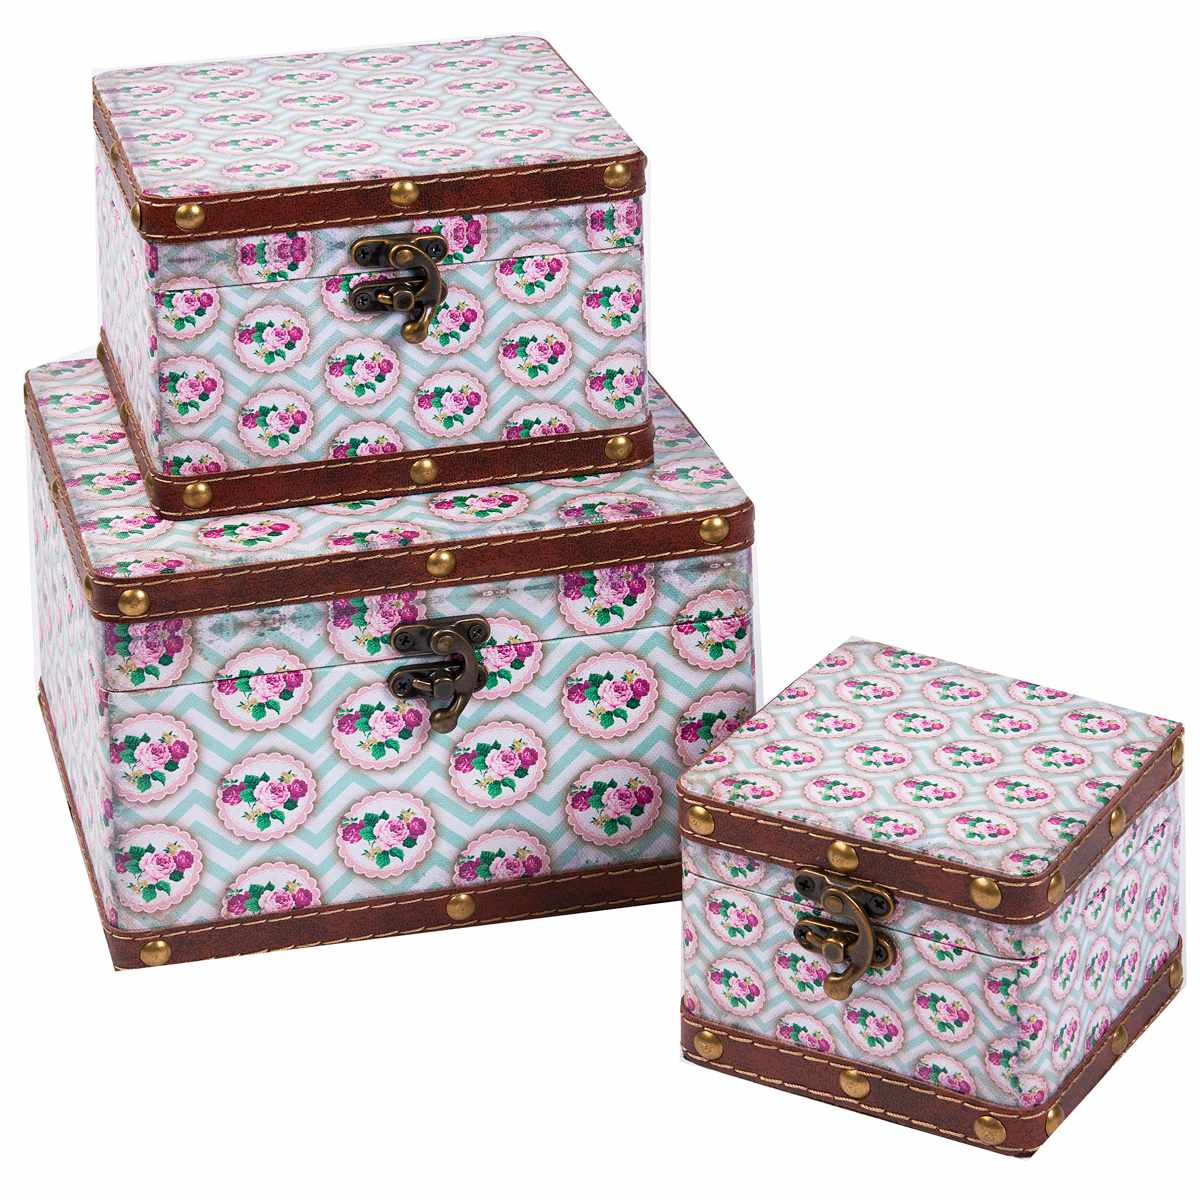 Wholesale Decorative Boxes SJ16118